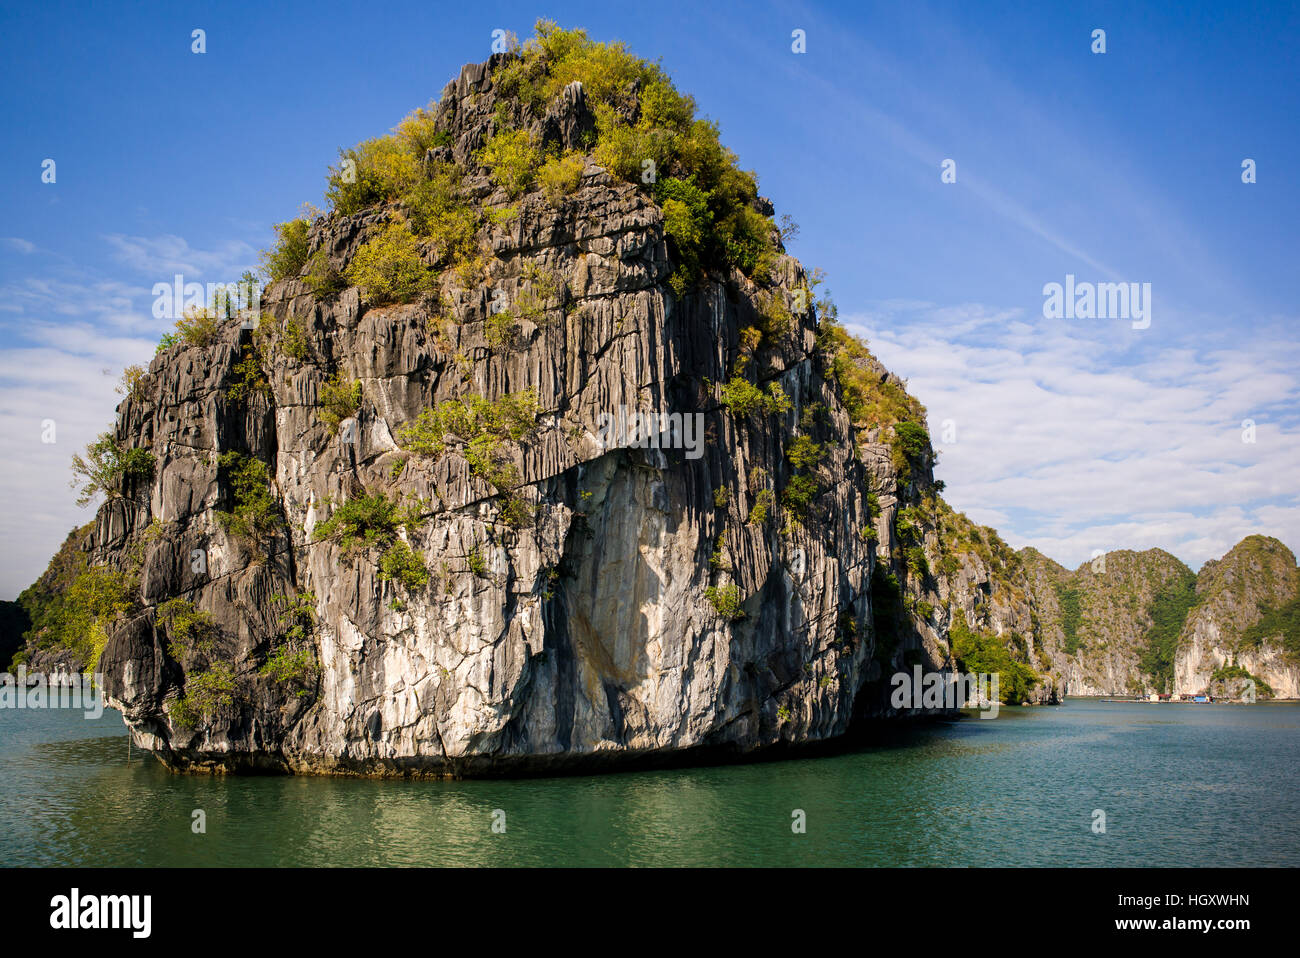 La splendida baia di Halong, patrimonio mondiale dell'Unesco in Vietnam Foto Stock